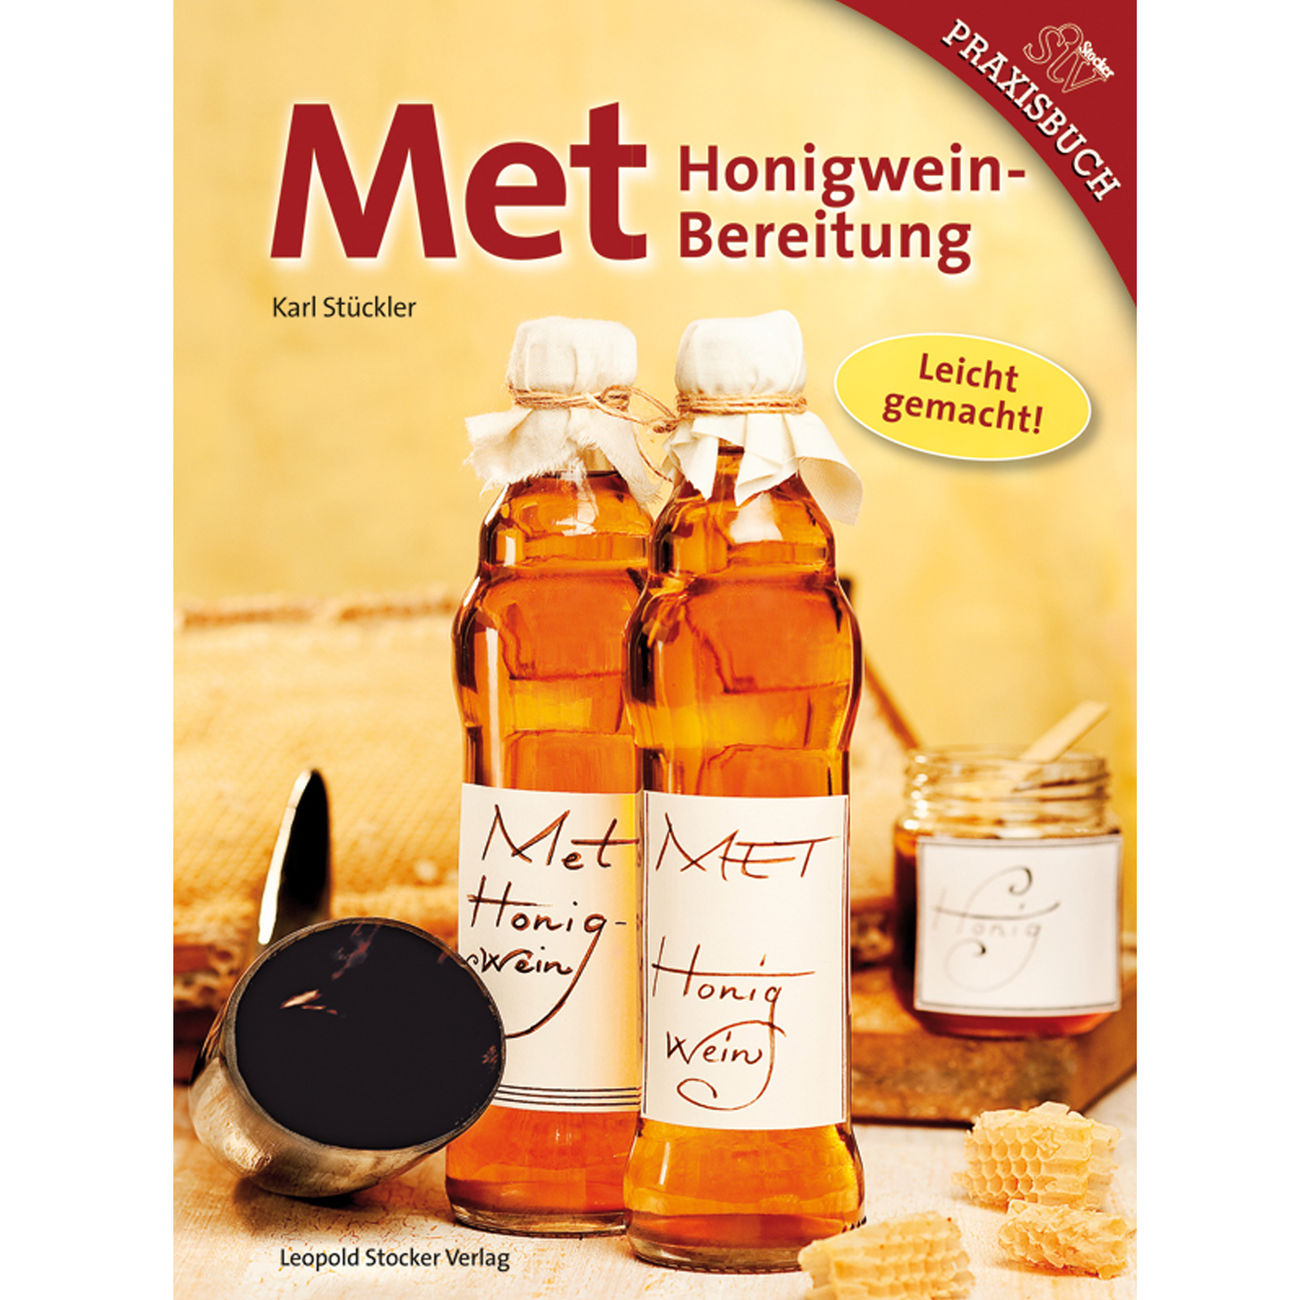 Met: Honigweinbereitung - leicht gemacht!